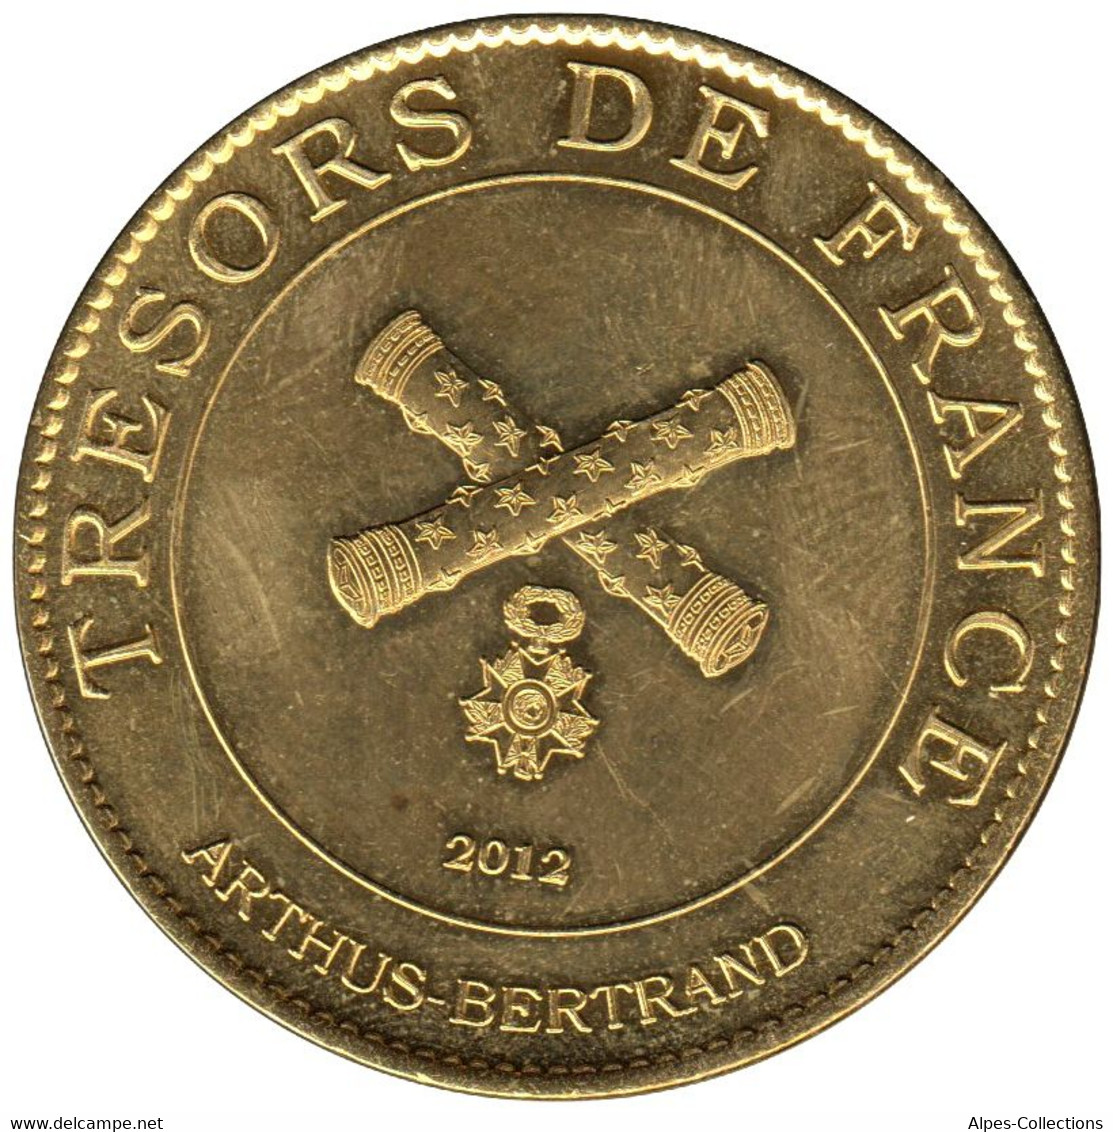 A25056-03 - JETON TOURISTIQUE ARTHUS B. - Citadelle De Besançon UNESCO - 2012.5 - 2012